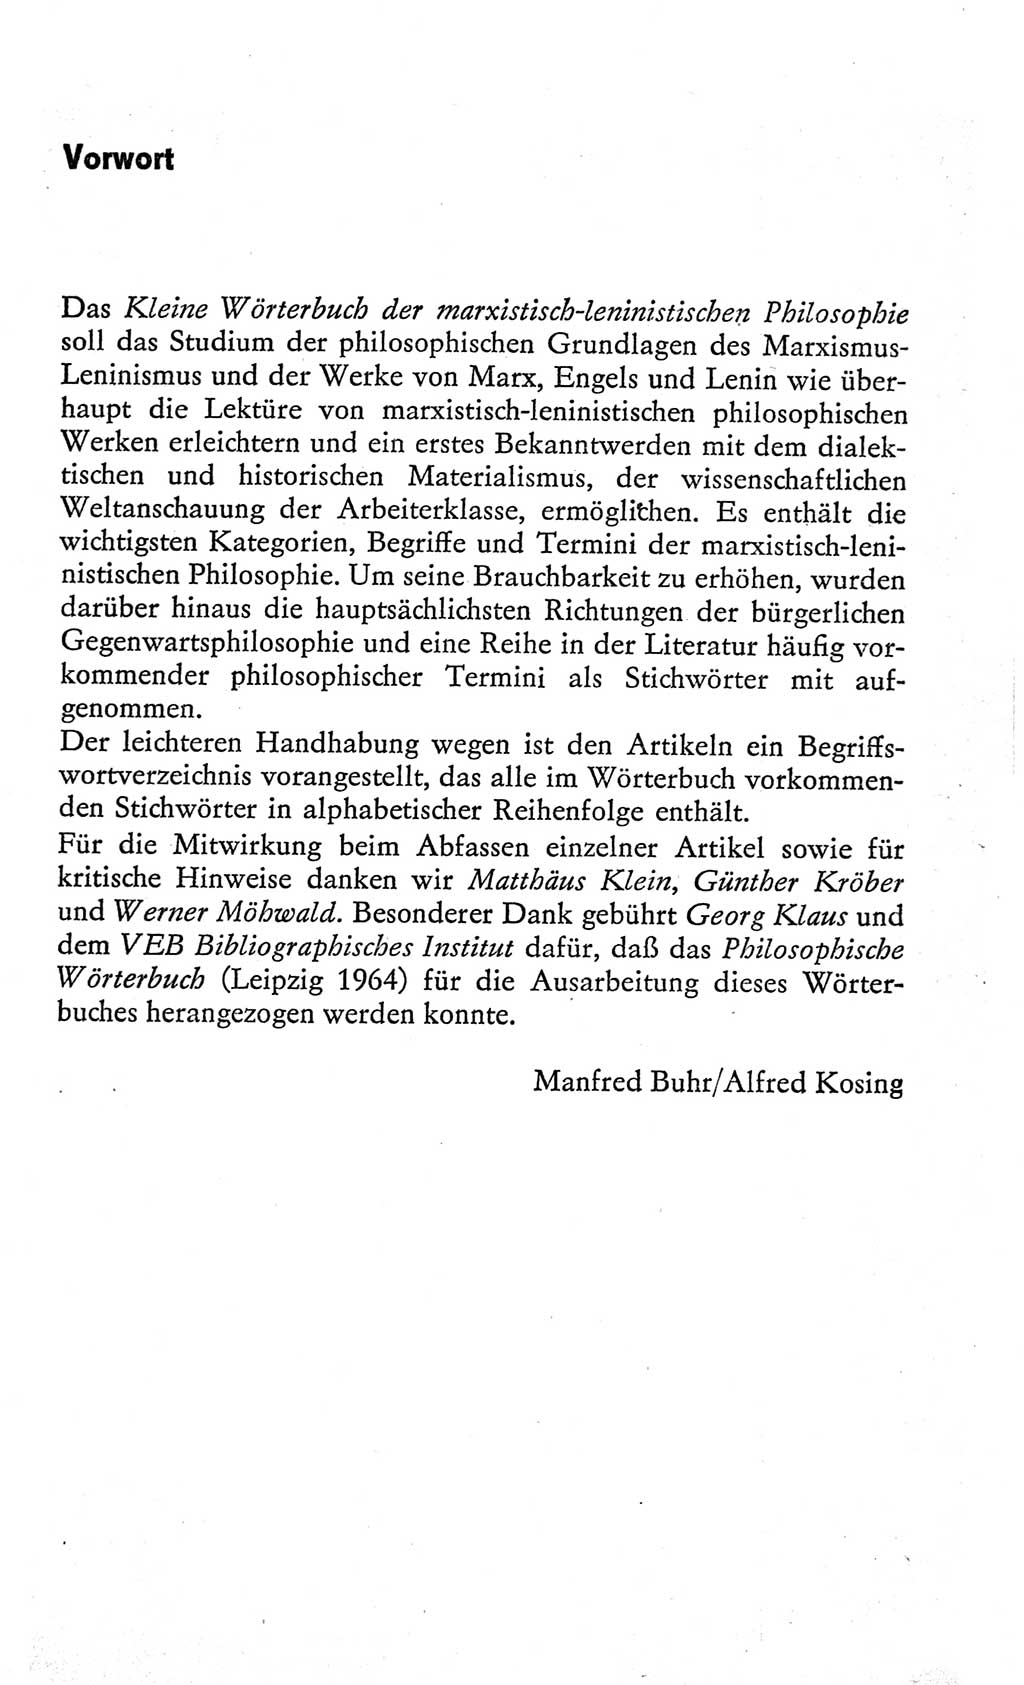 Kleines Wörterbuch der marxistisch-leninistischen Philosophie [Deutsche Demokratische Republik (DDR)] 1966, Seite 5 (Kl. Wb. ML Phil. DDR 1966, S. 5)